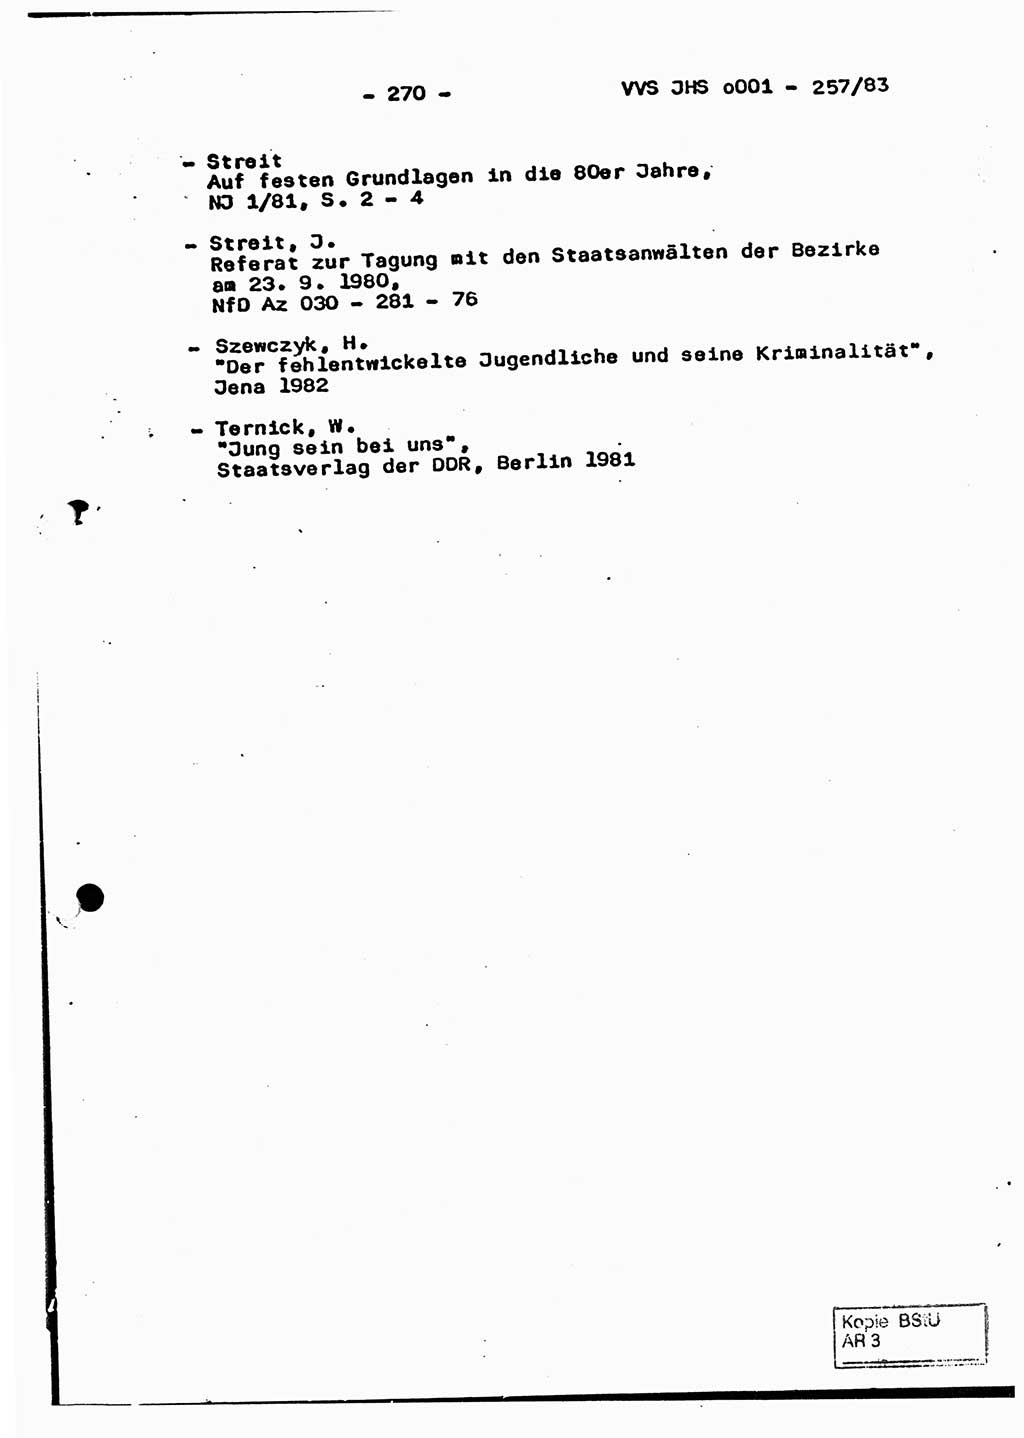 Dissertation, Oberst Helmut Lubas (BV Mdg.), Oberstleutnant Manfred Eschberger (HA IX), Oberleutnant Hans-Jürgen Ludwig (JHS), Ministerium für Staatssicherheit (MfS) [Deutsche Demokratische Republik (DDR)], Juristische Hochschule (JHS), Vertrauliche Verschlußsache (VVS) o001-257/83, Potsdam 1983, Seite 270 (Diss. MfS DDR JHS VVS o001-257/83 1983, S. 270)